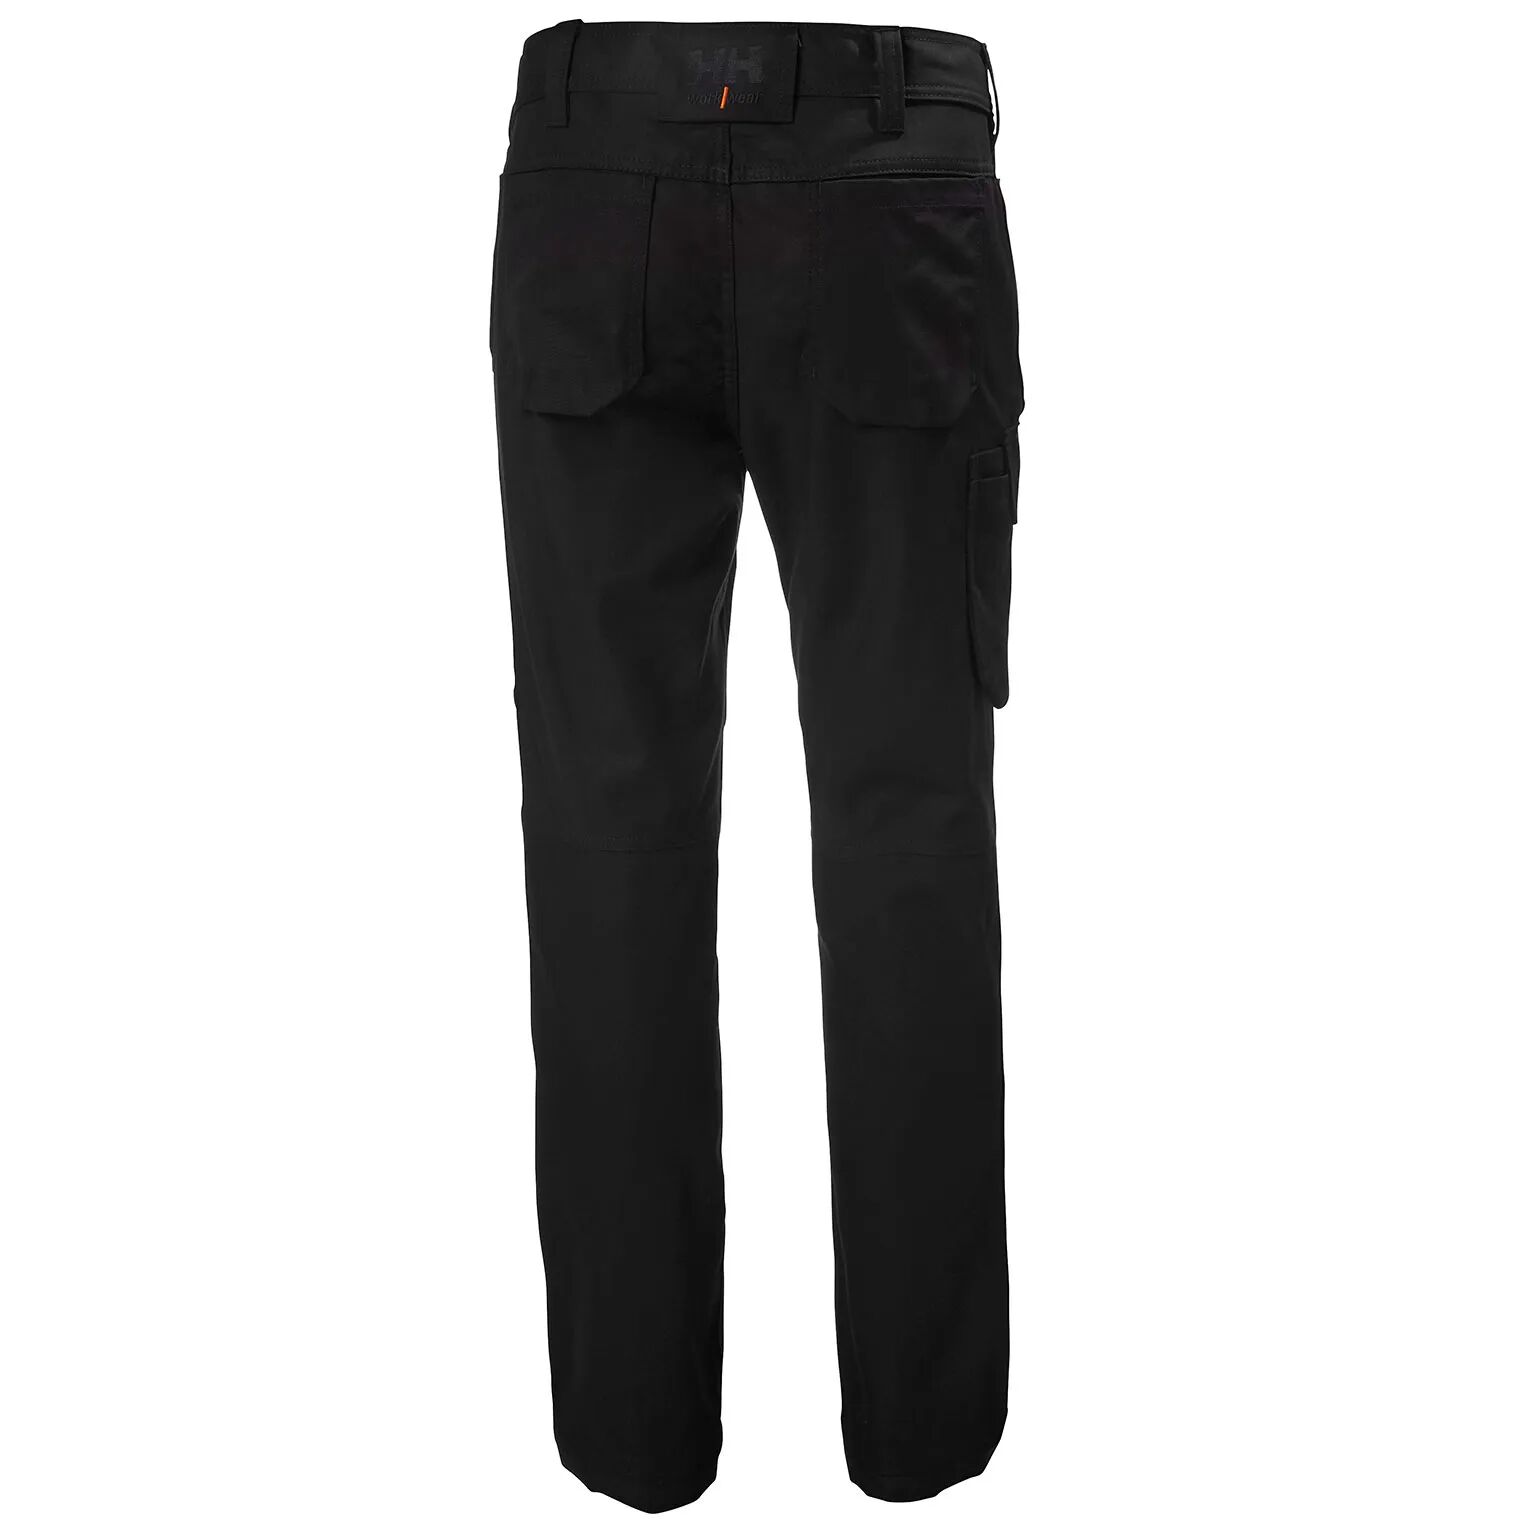 HH Workwear Helly Hansen WorkwearWomen’s Luna Work Pants Black 4/32